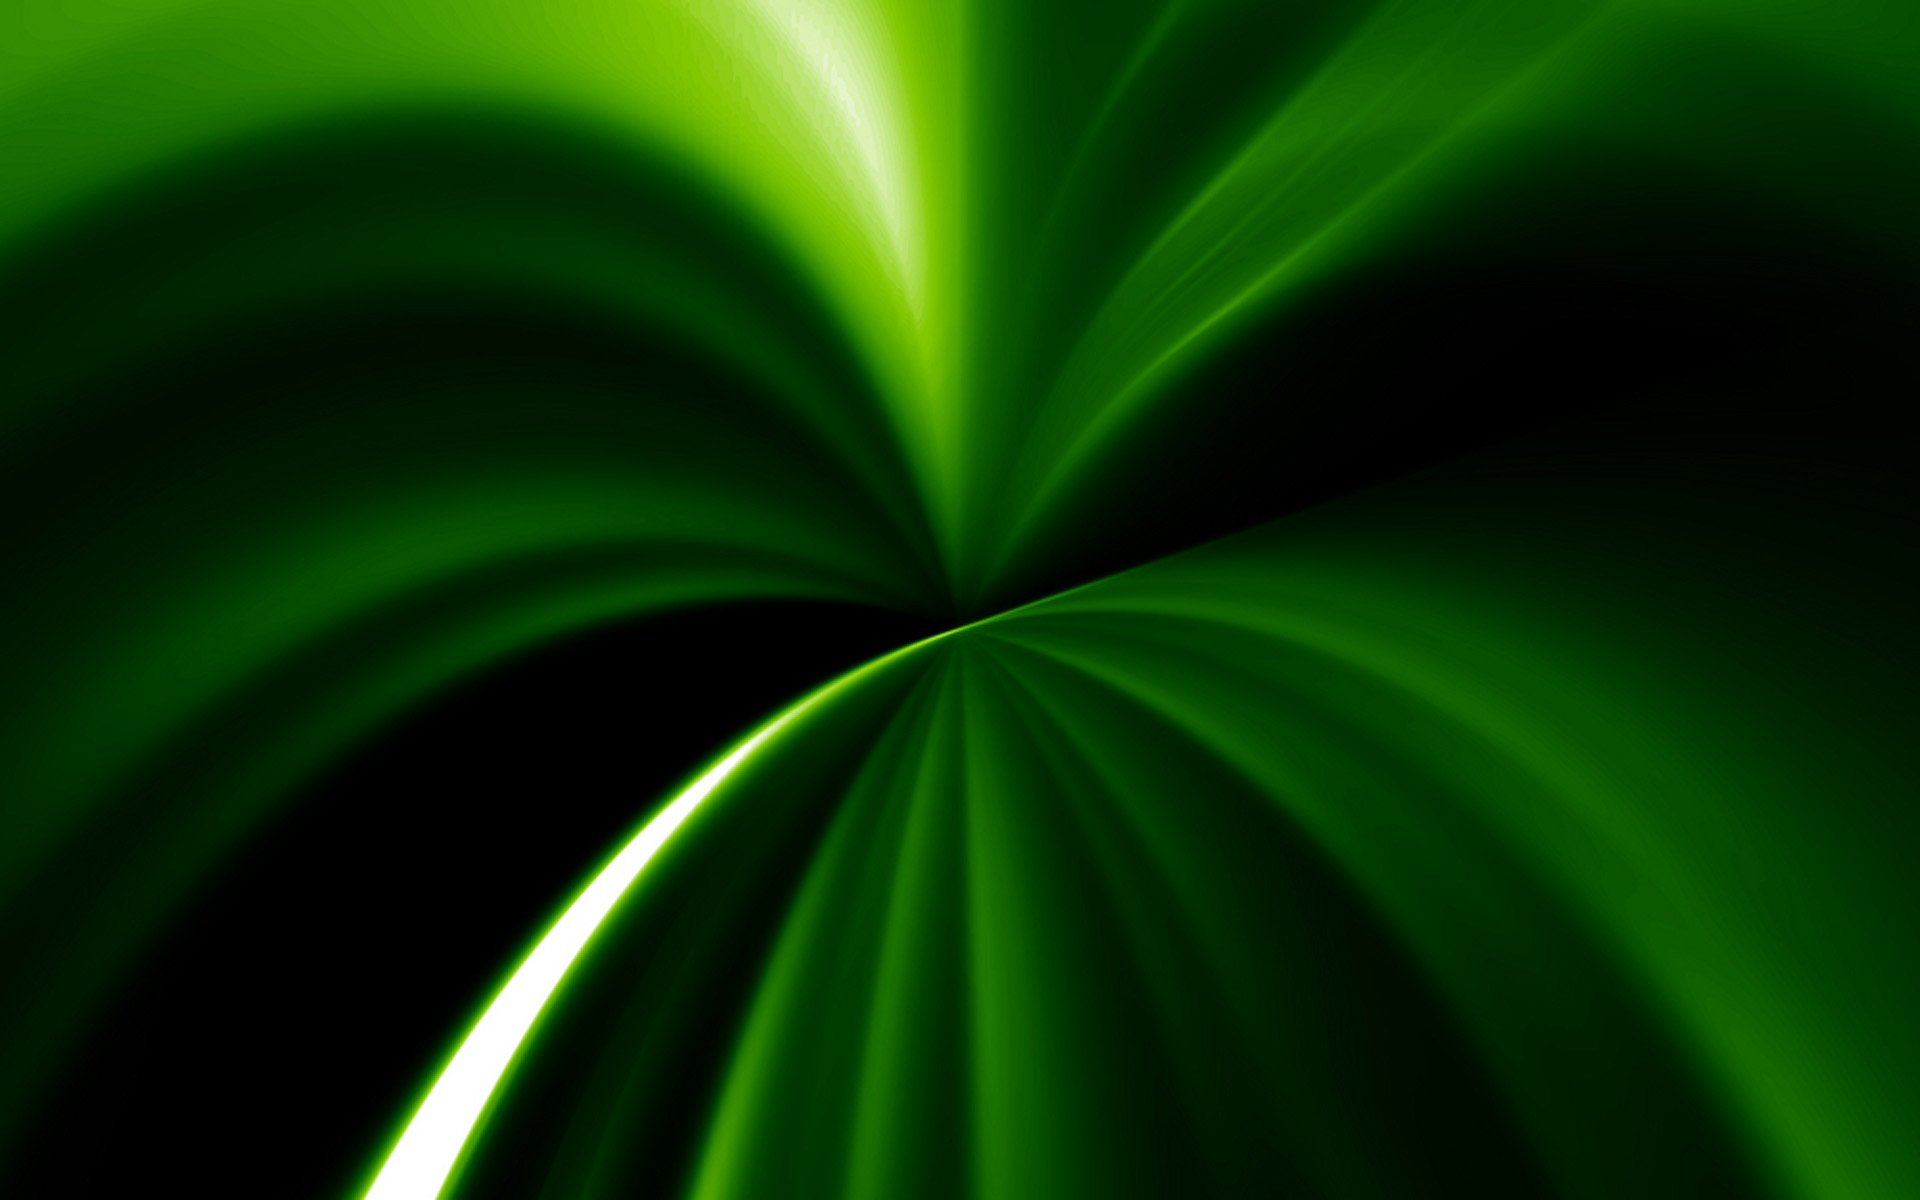 壁纸1920x1200PS效果绿色光线壁纸 PS效果绿色光线壁纸 PS效果绿色光线图片 PS效果绿色光线素材 创意壁纸 创意图库 创意图片素材桌面壁纸